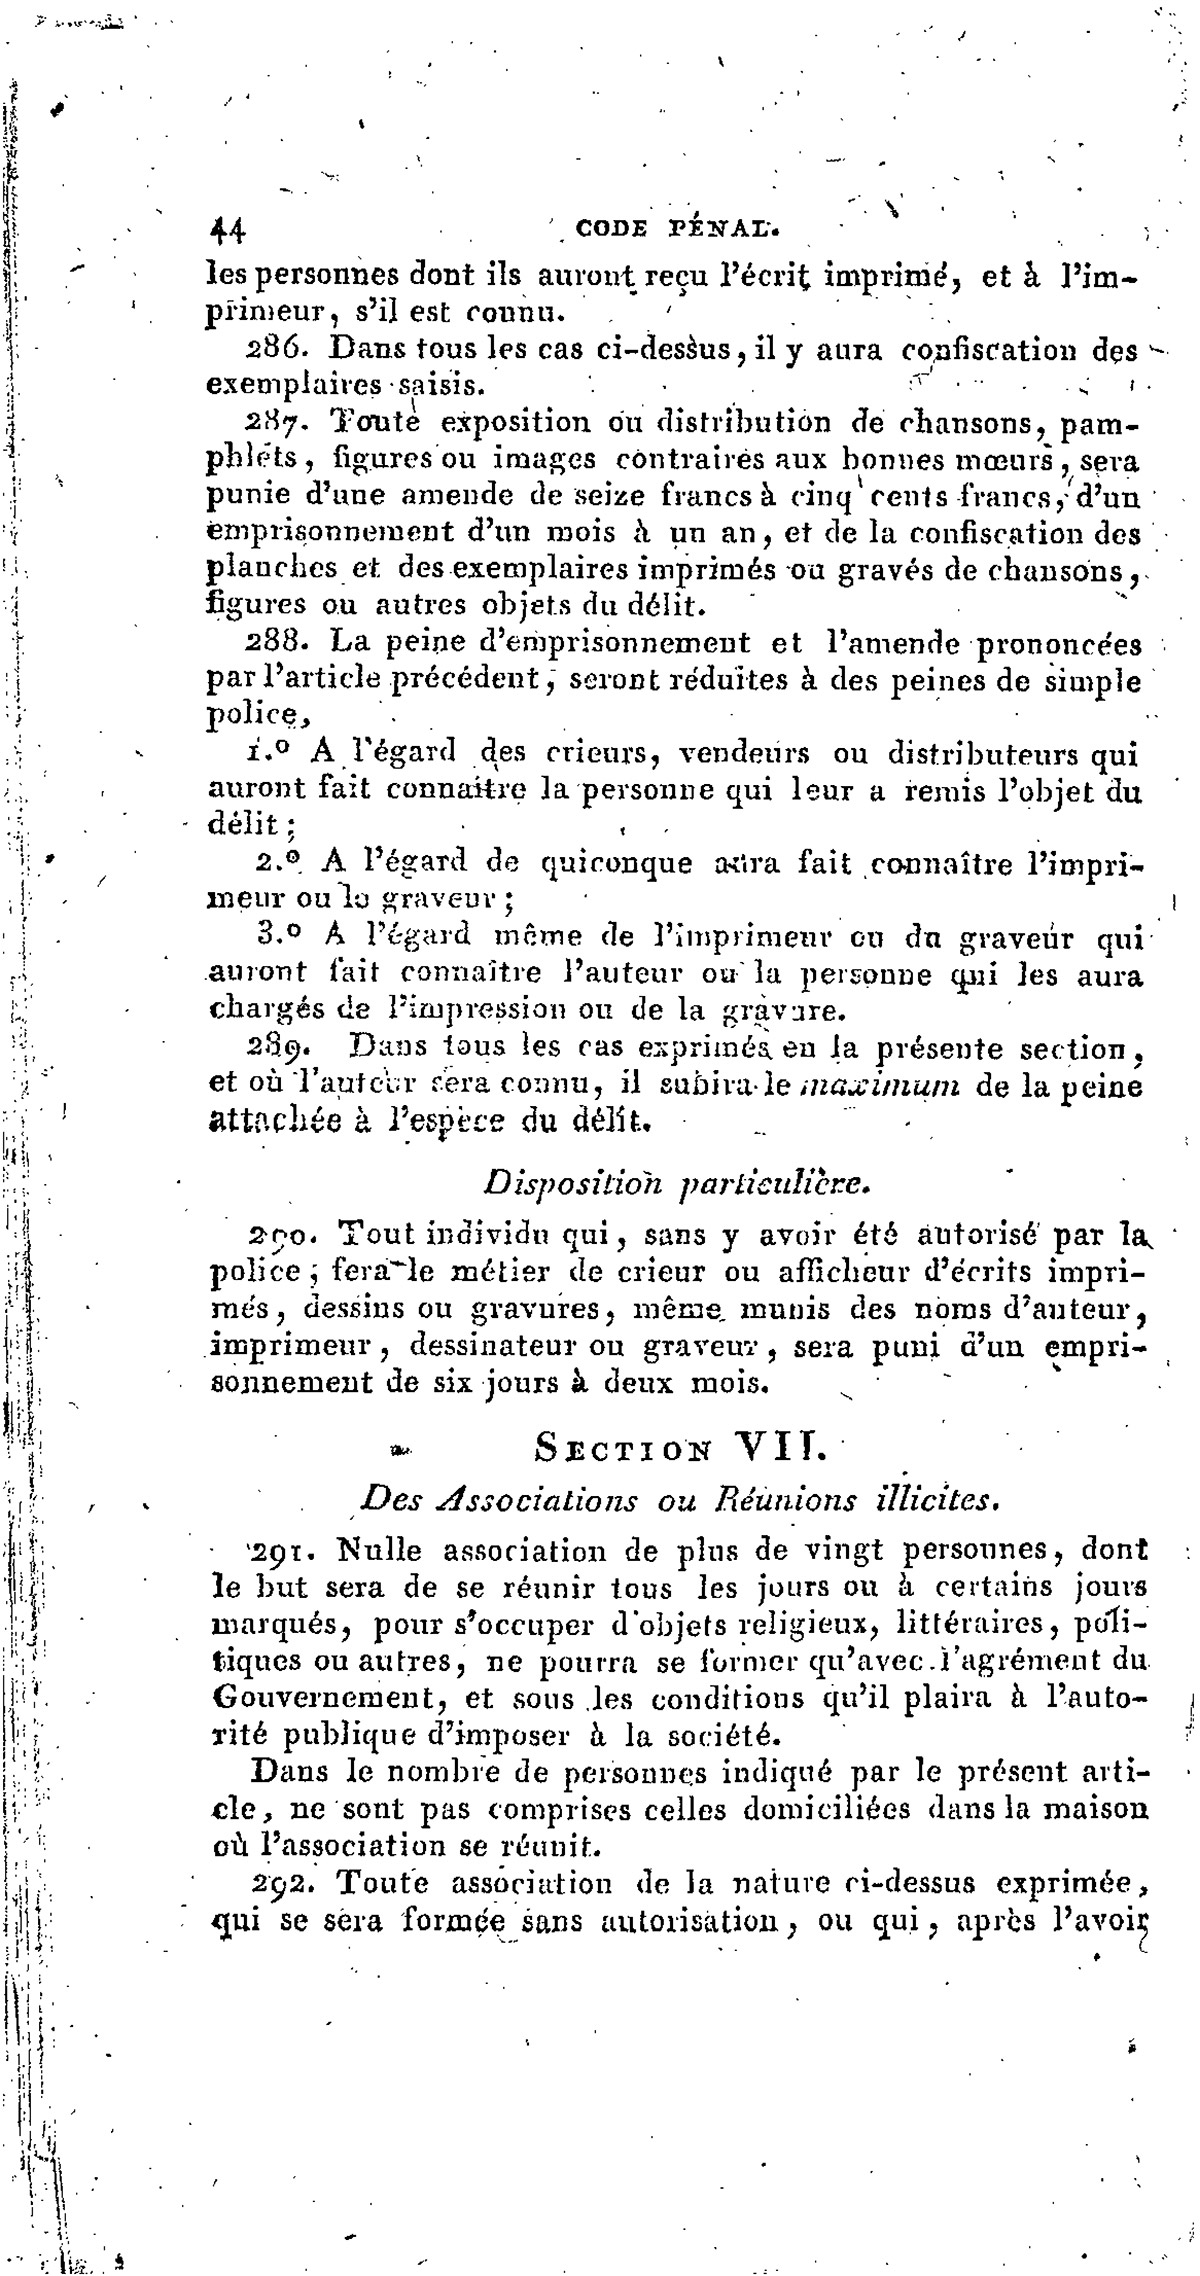 Extrait du Code pénal de l'empire français : article 291, 1810